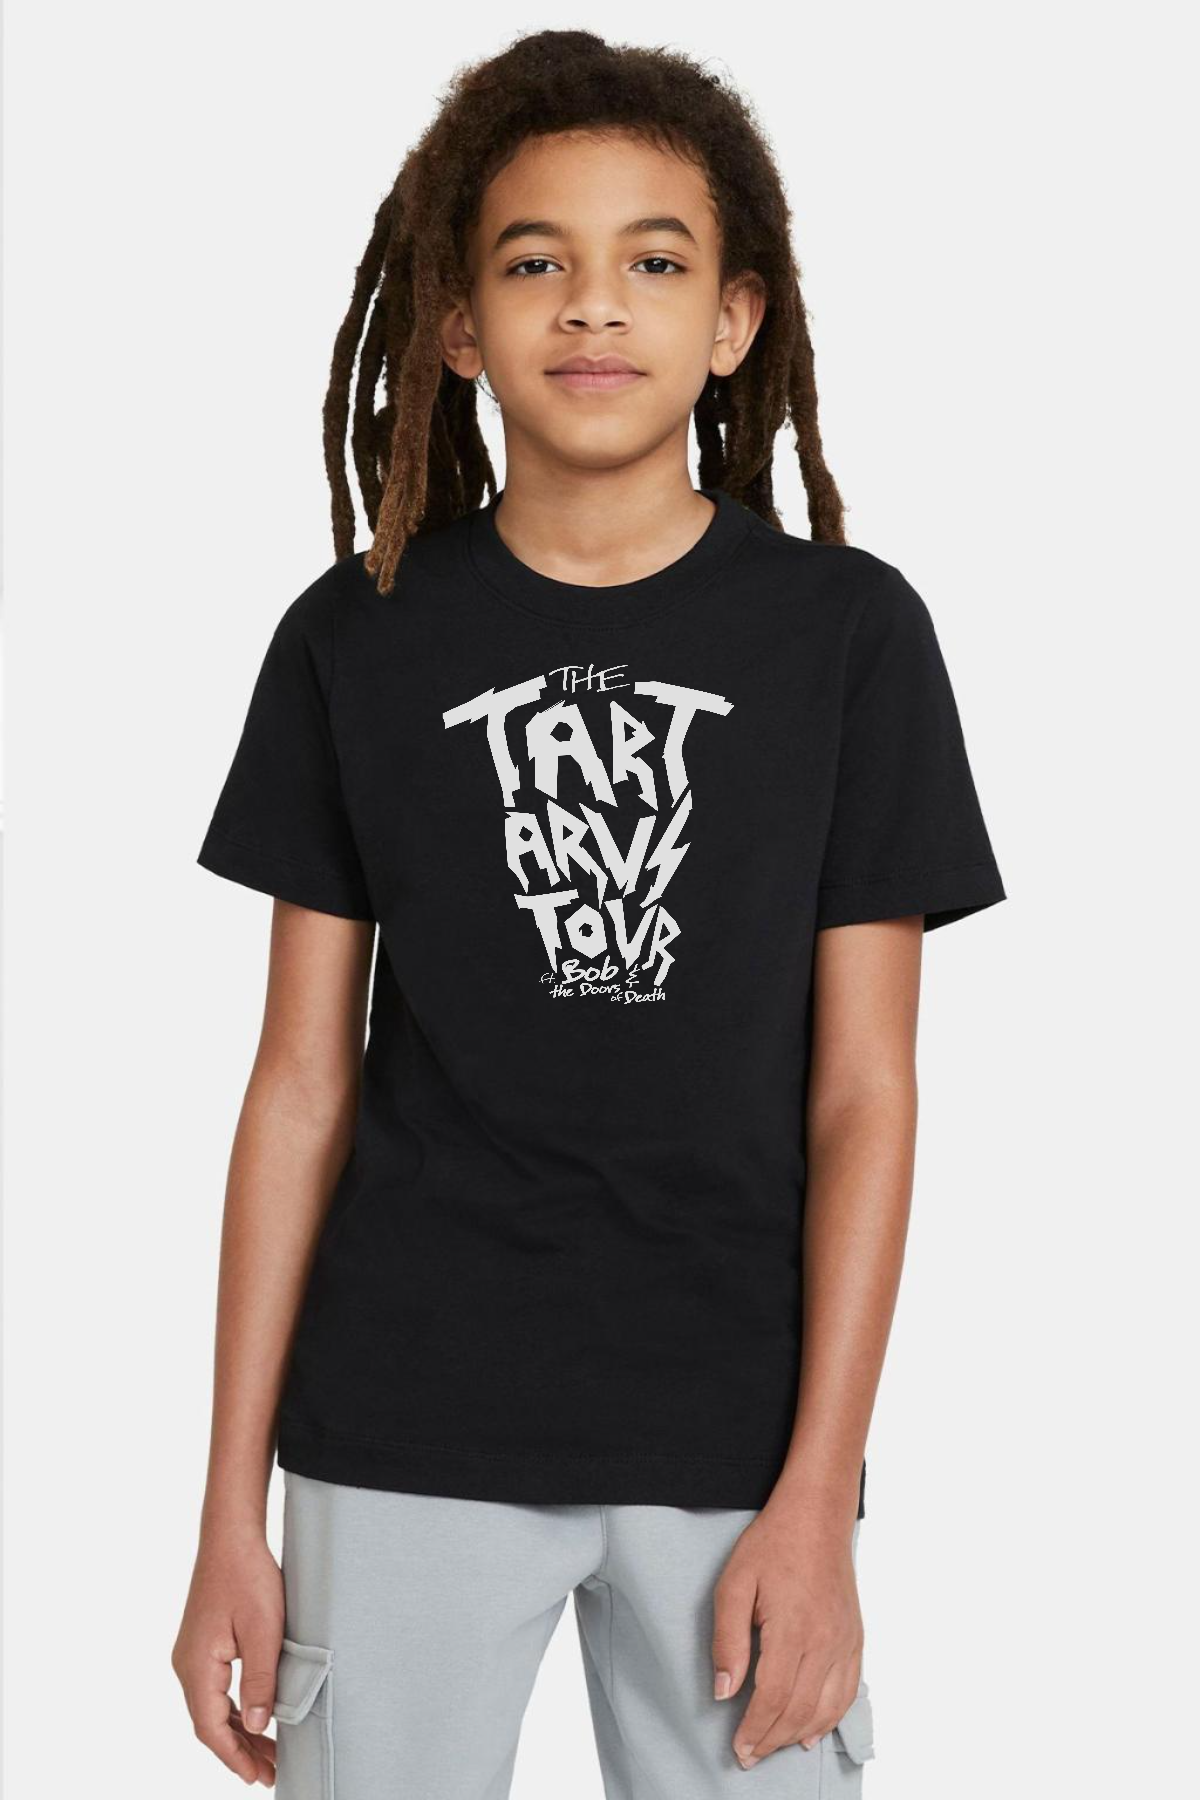 Percy Jackson The Tartarus Tour Siyah Çocuk Tshirt